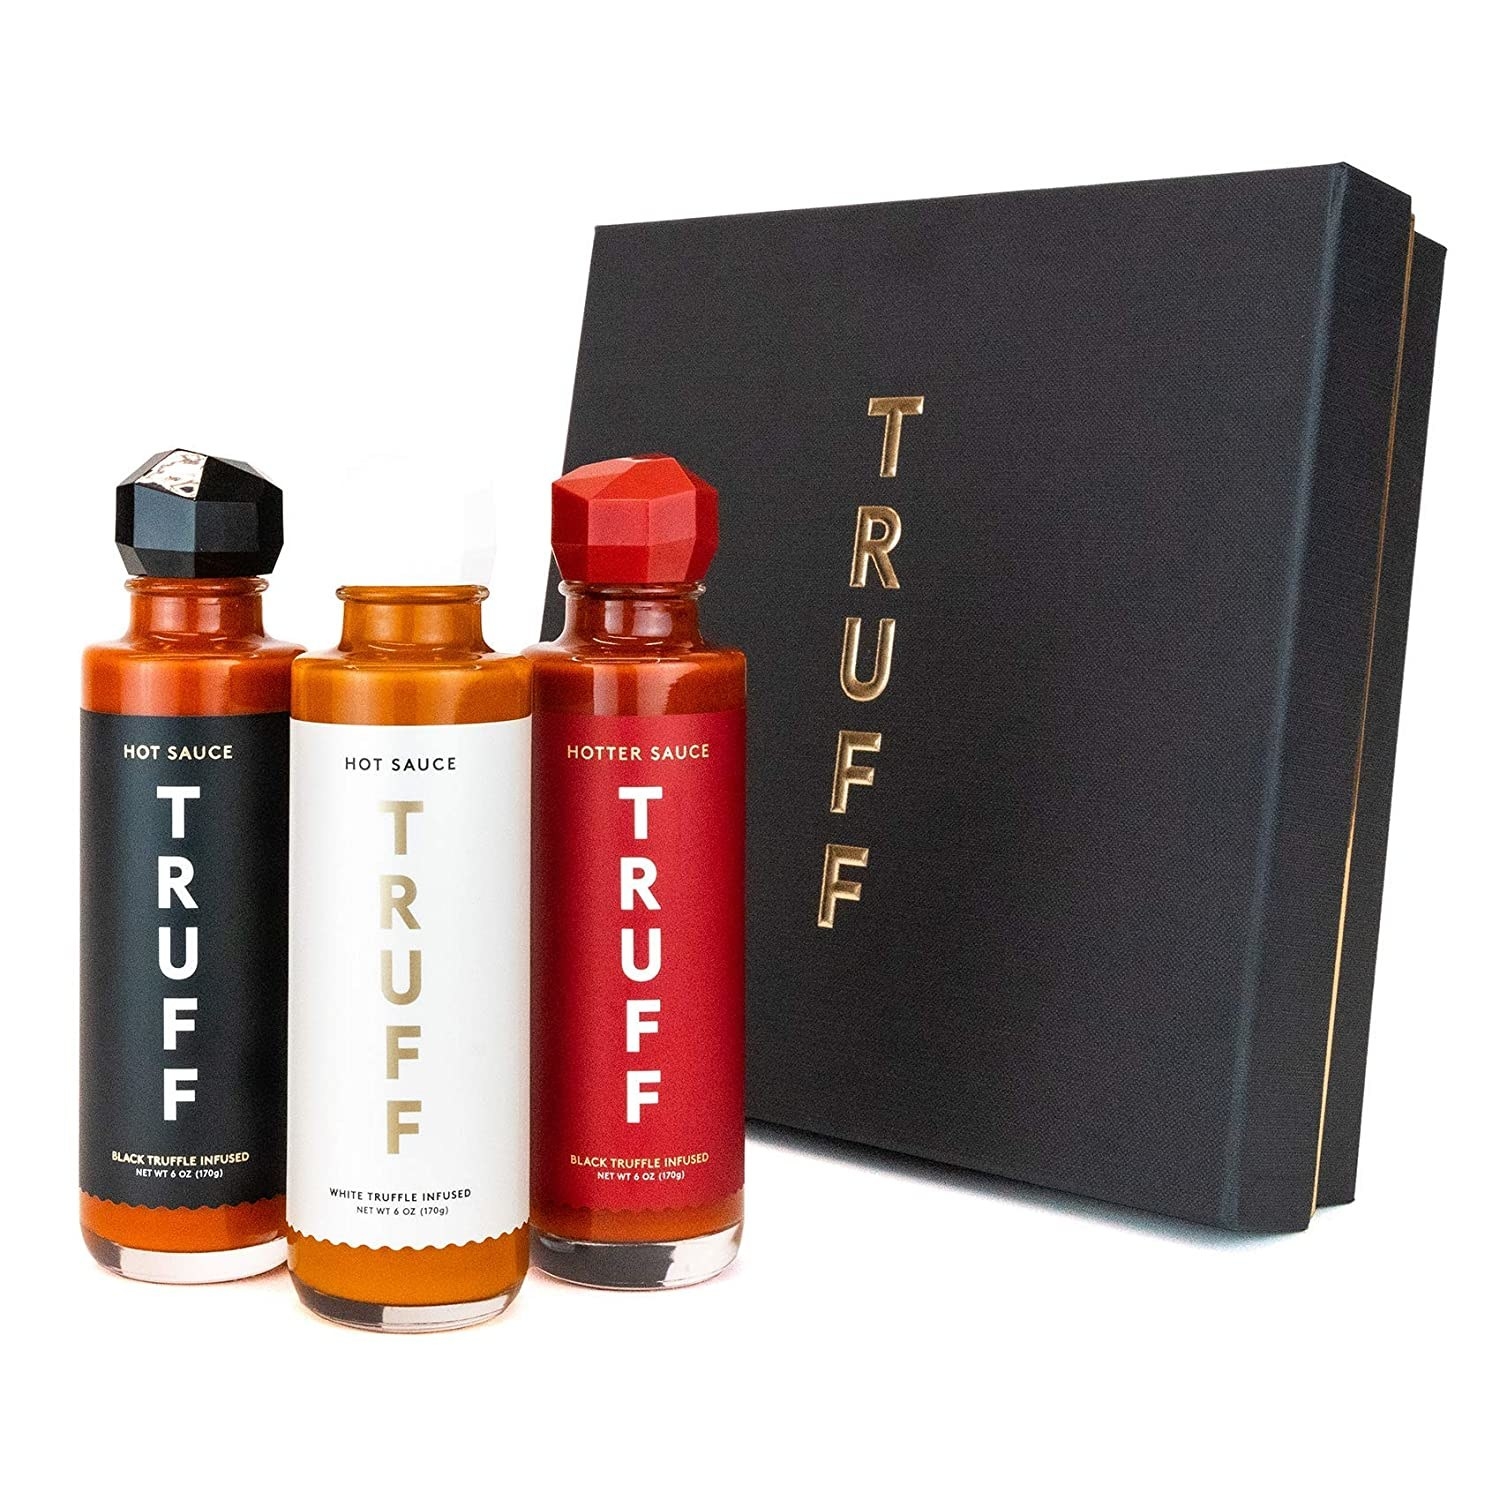 Three bottles of Truff hot sauce next to gift box